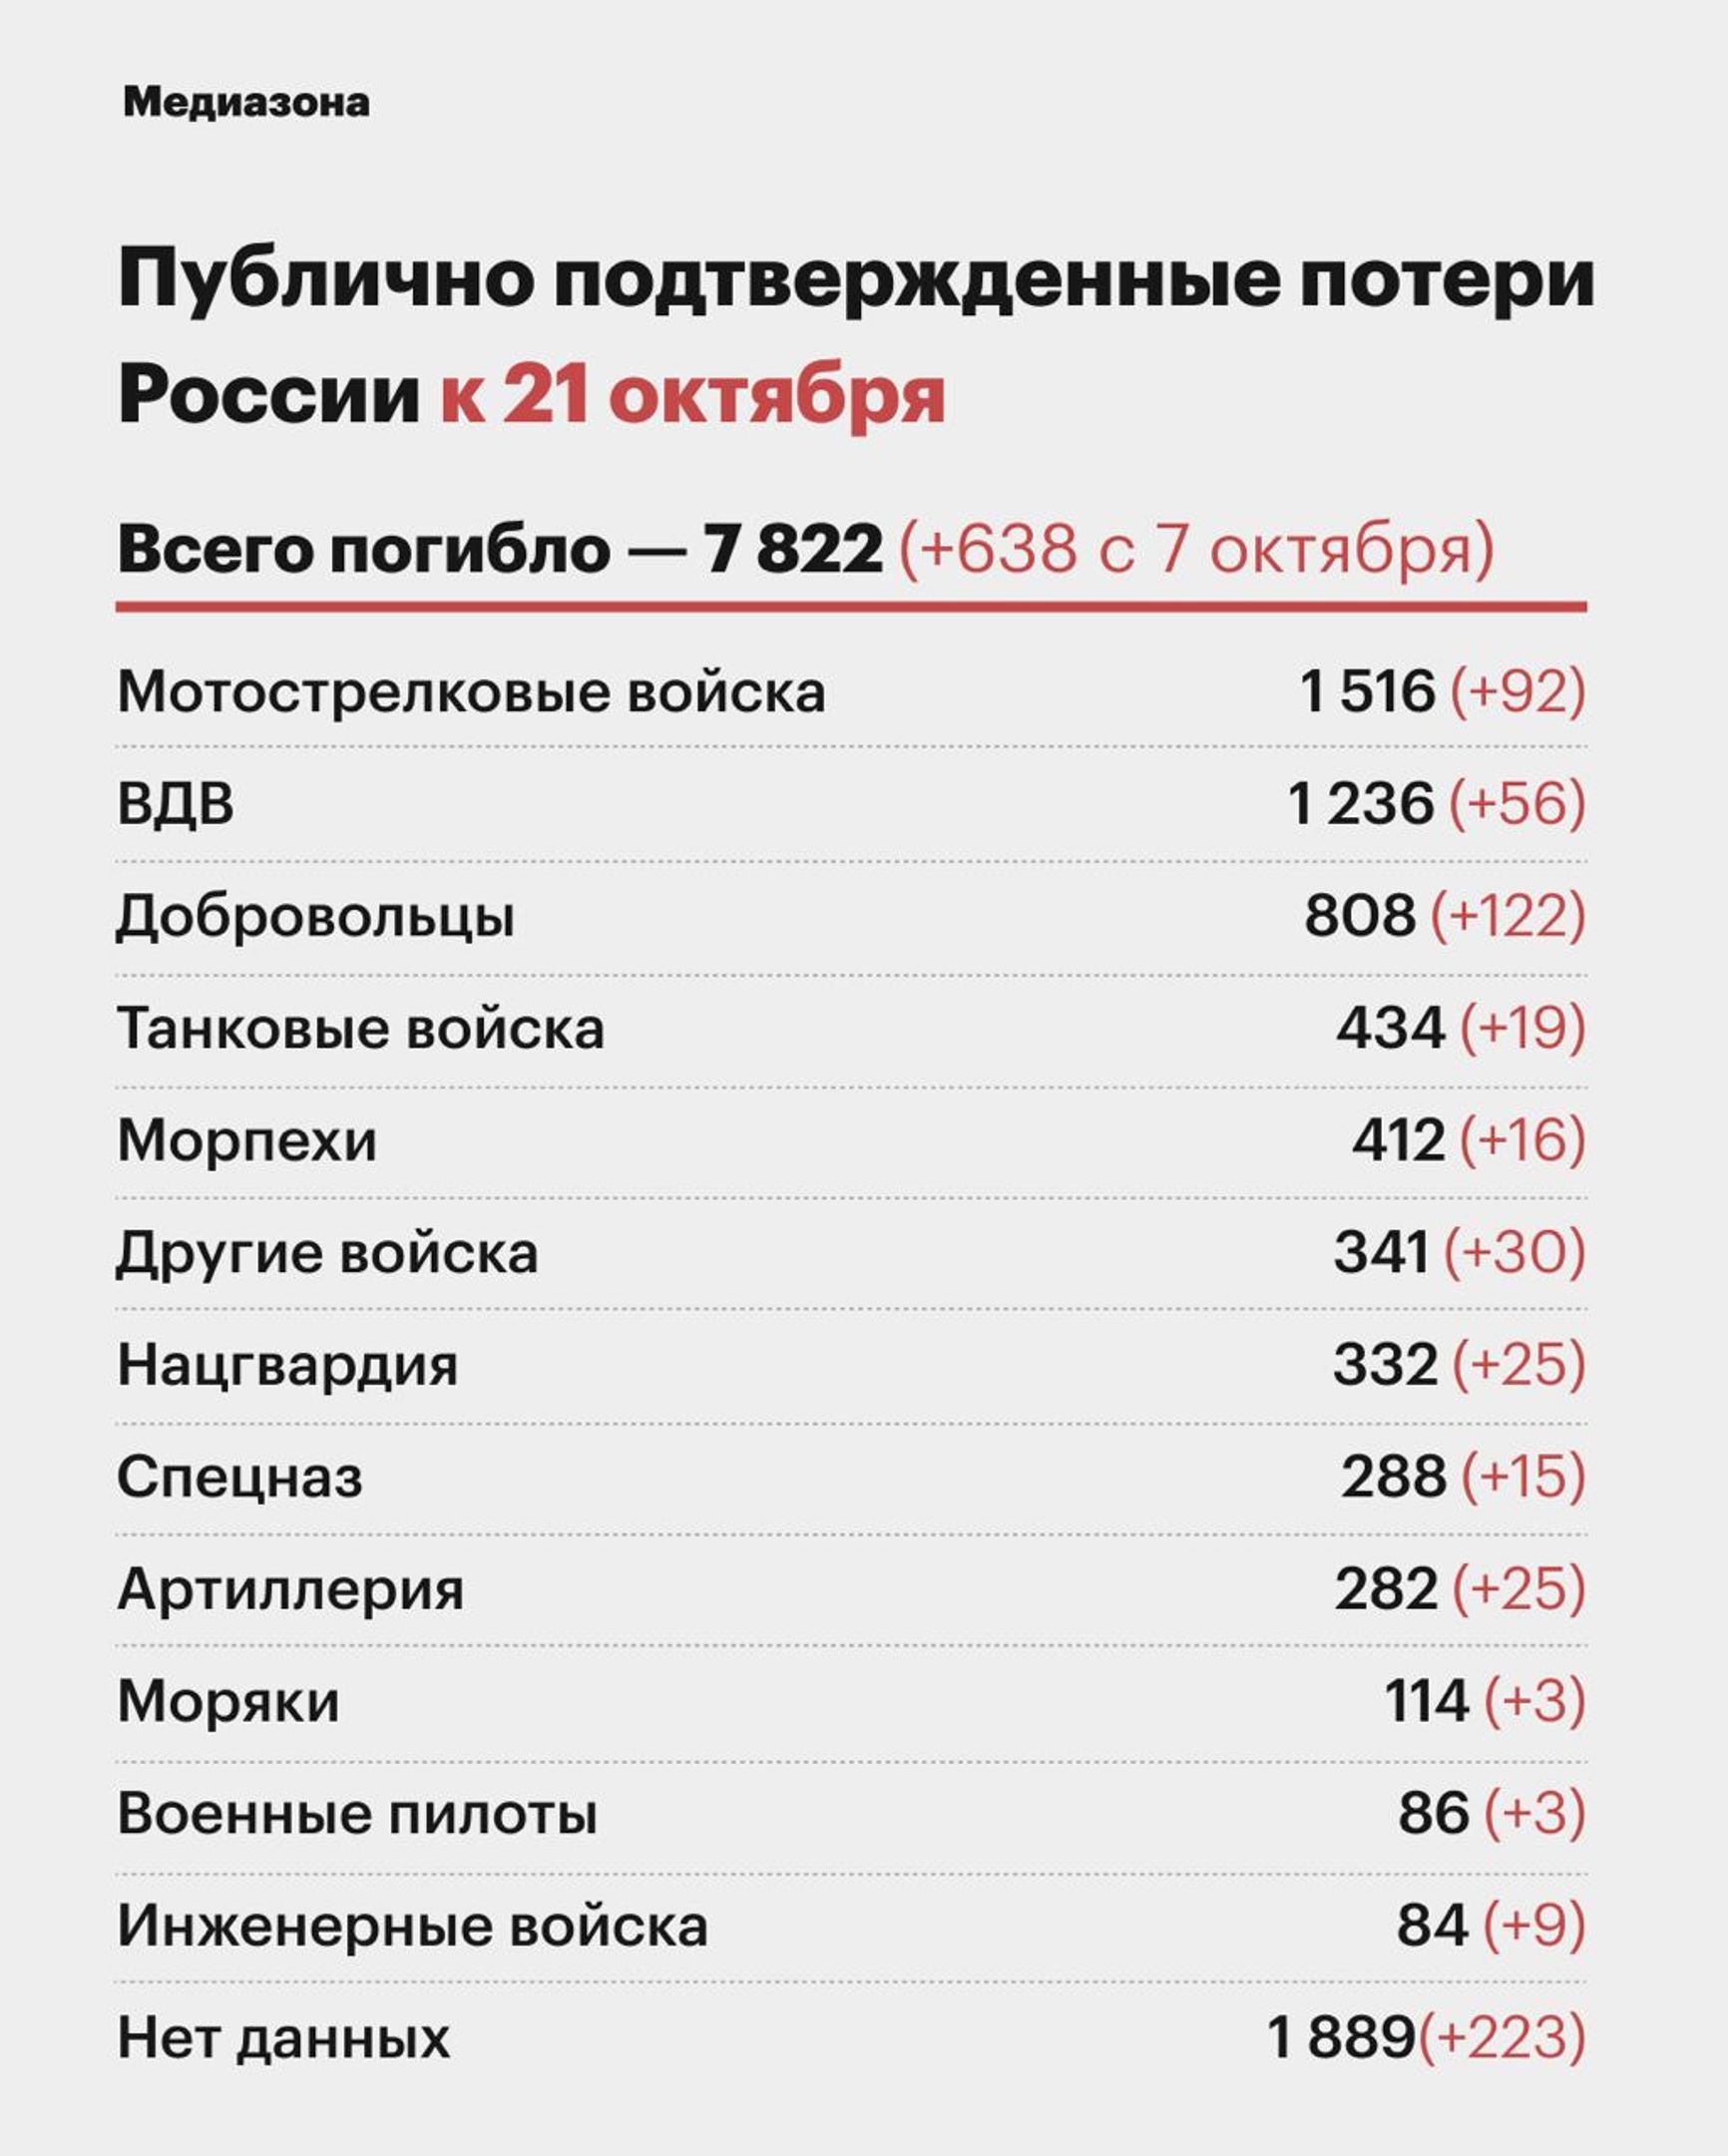 Подтверждена гибель 7822 российских военнослужащих на войне в Украине — «Медиазона»